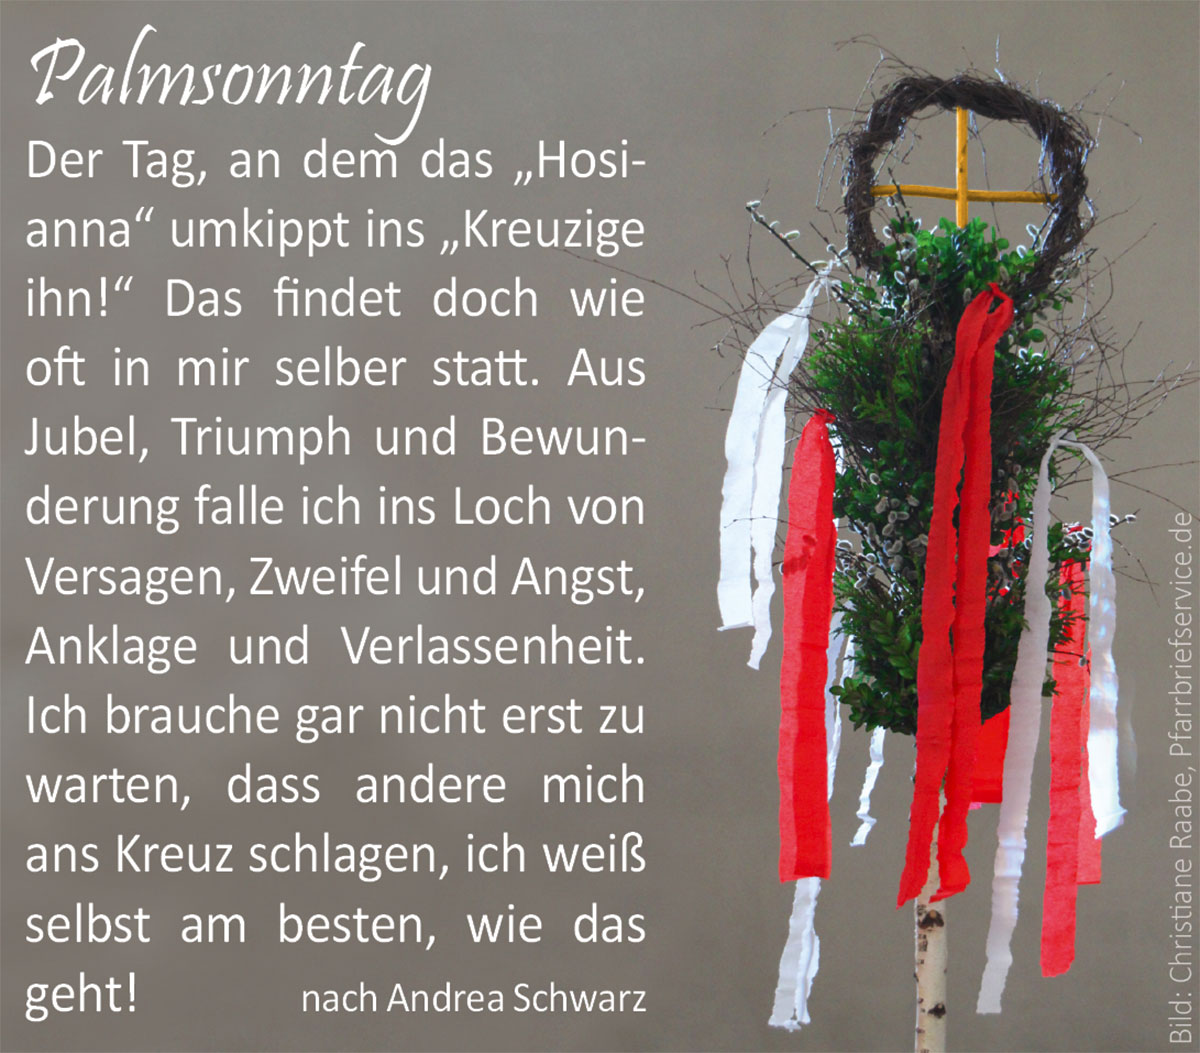 Palmsonntag - Palmbuschel (Bild: Christiane Raabe, Pfarrbriefservice.de)